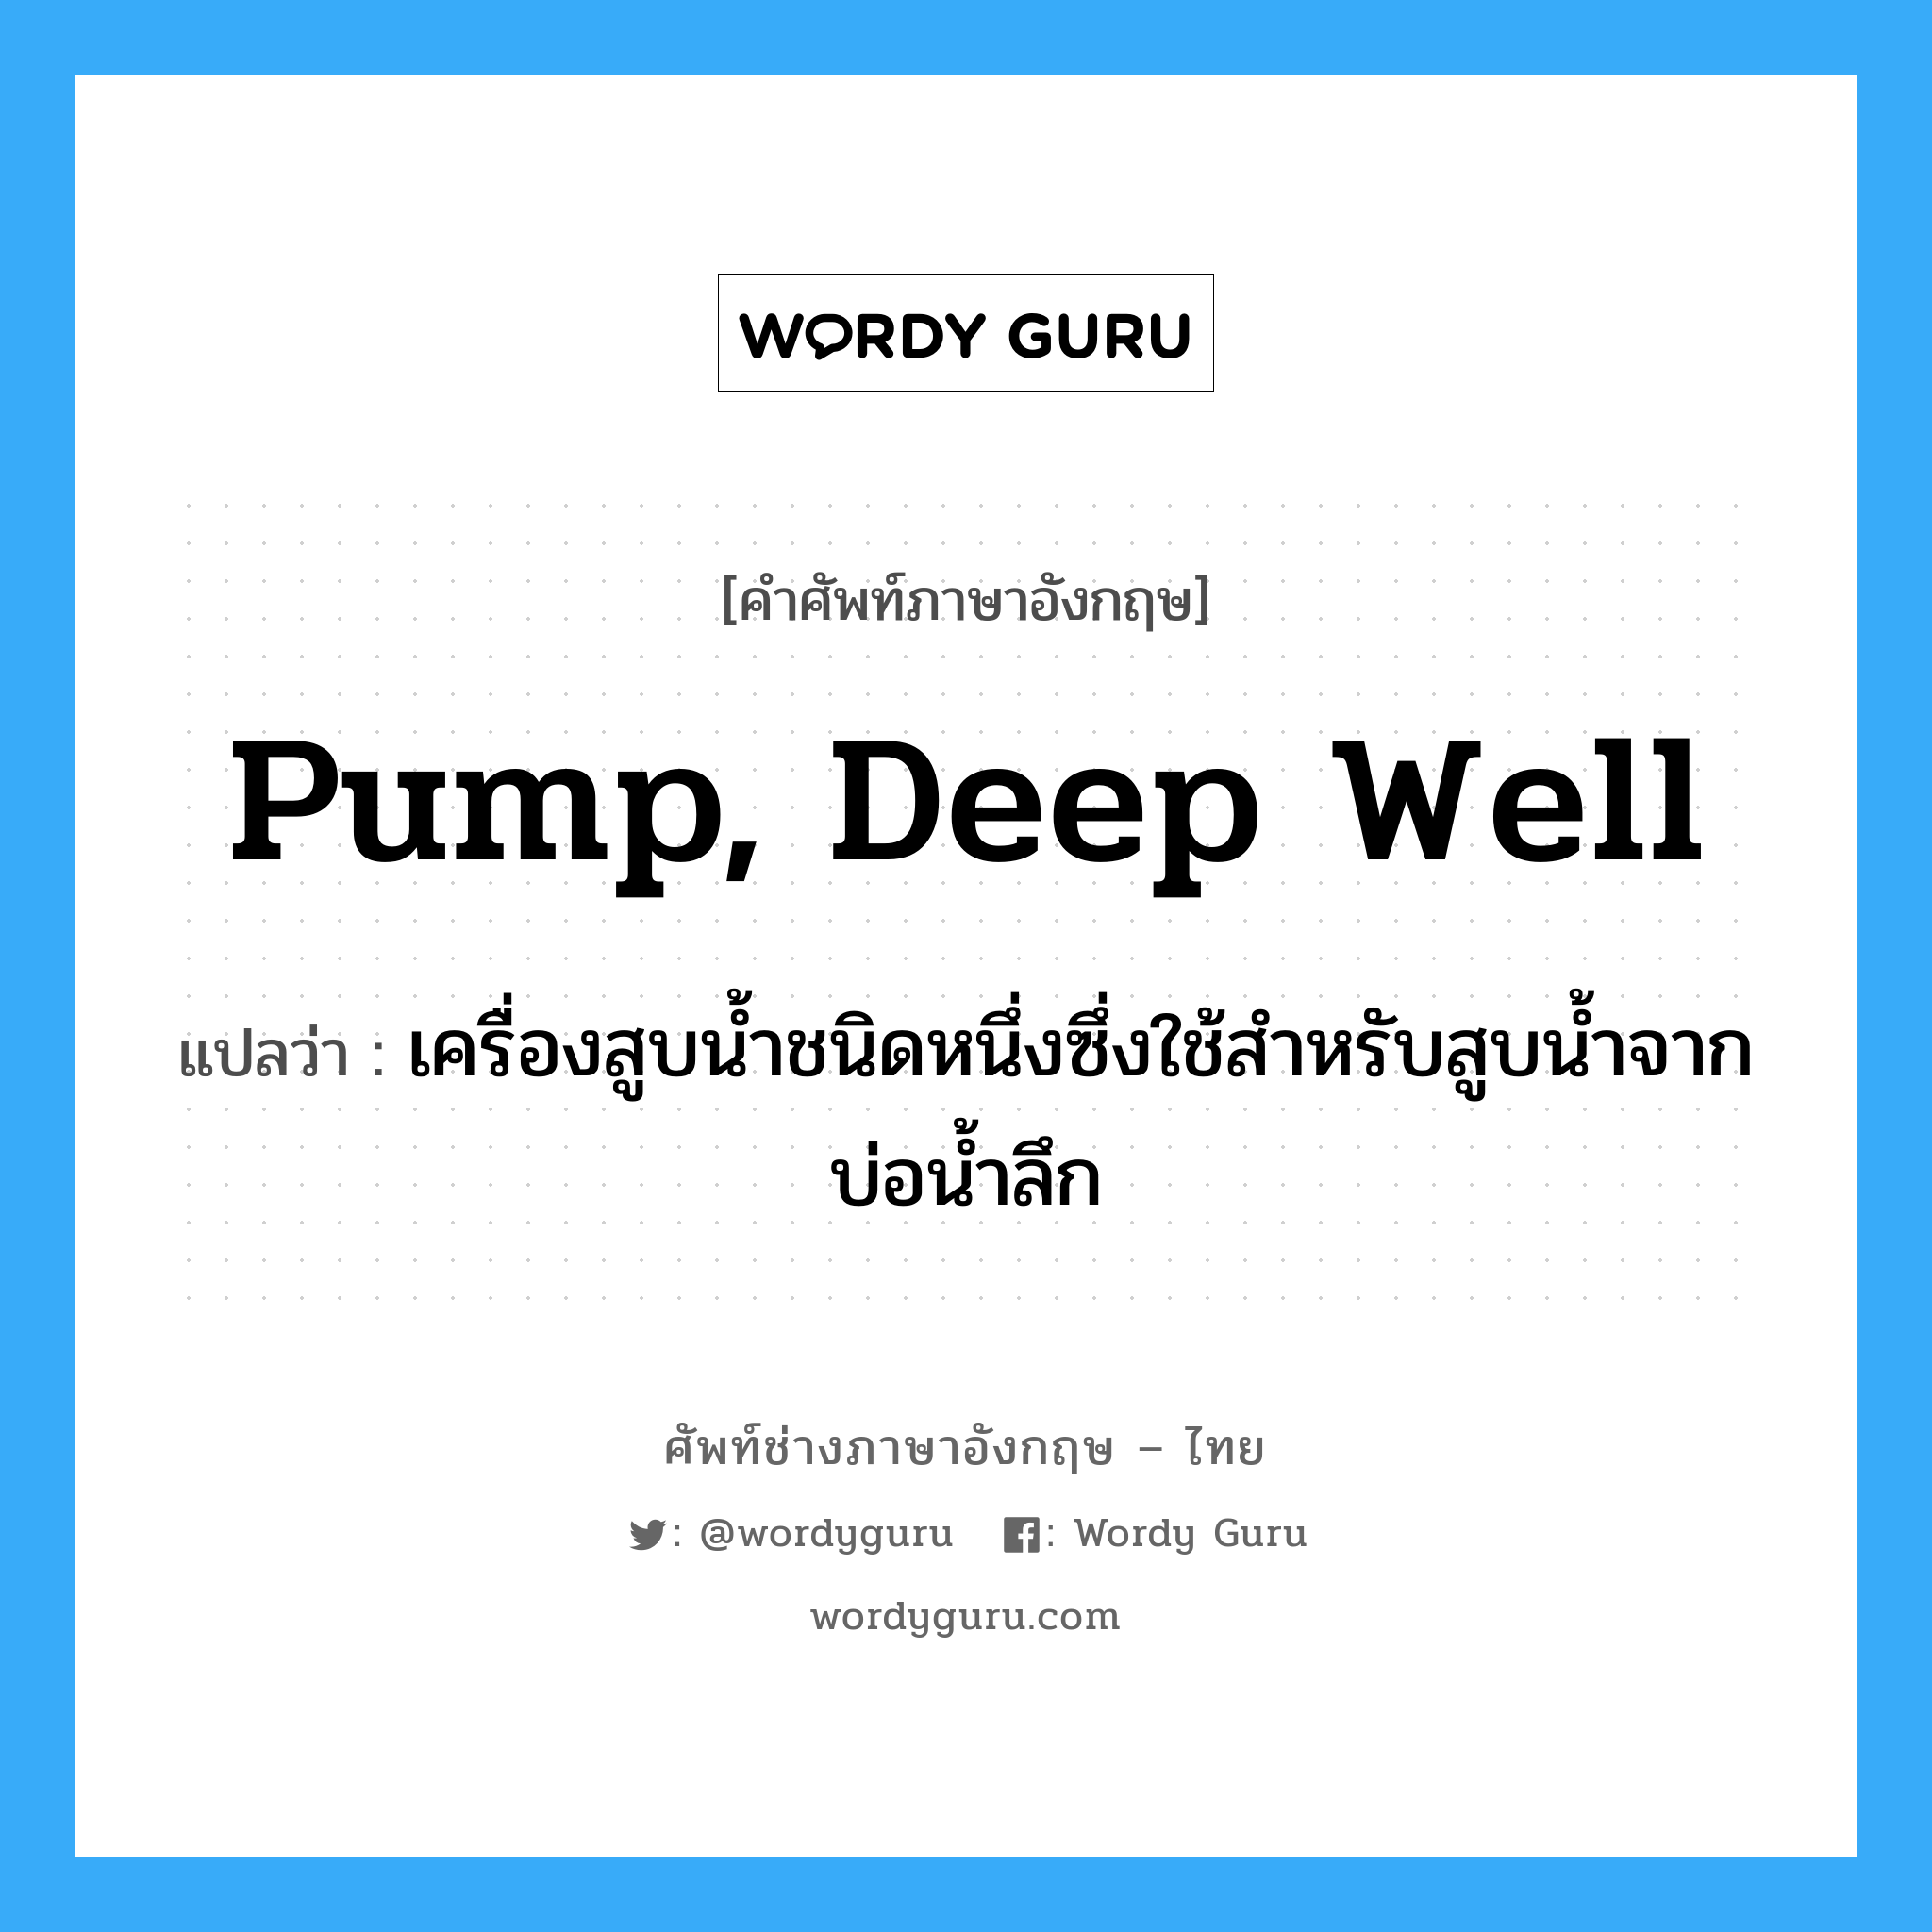 pump, deep well แปลว่า?, คำศัพท์ช่างภาษาอังกฤษ - ไทย pump, deep well คำศัพท์ภาษาอังกฤษ pump, deep well แปลว่า เครื่องสูบน้ำชนิดหนึ่งซึ่งใช้สำหรับสูบน้ำจากบ่อน้ำลึก